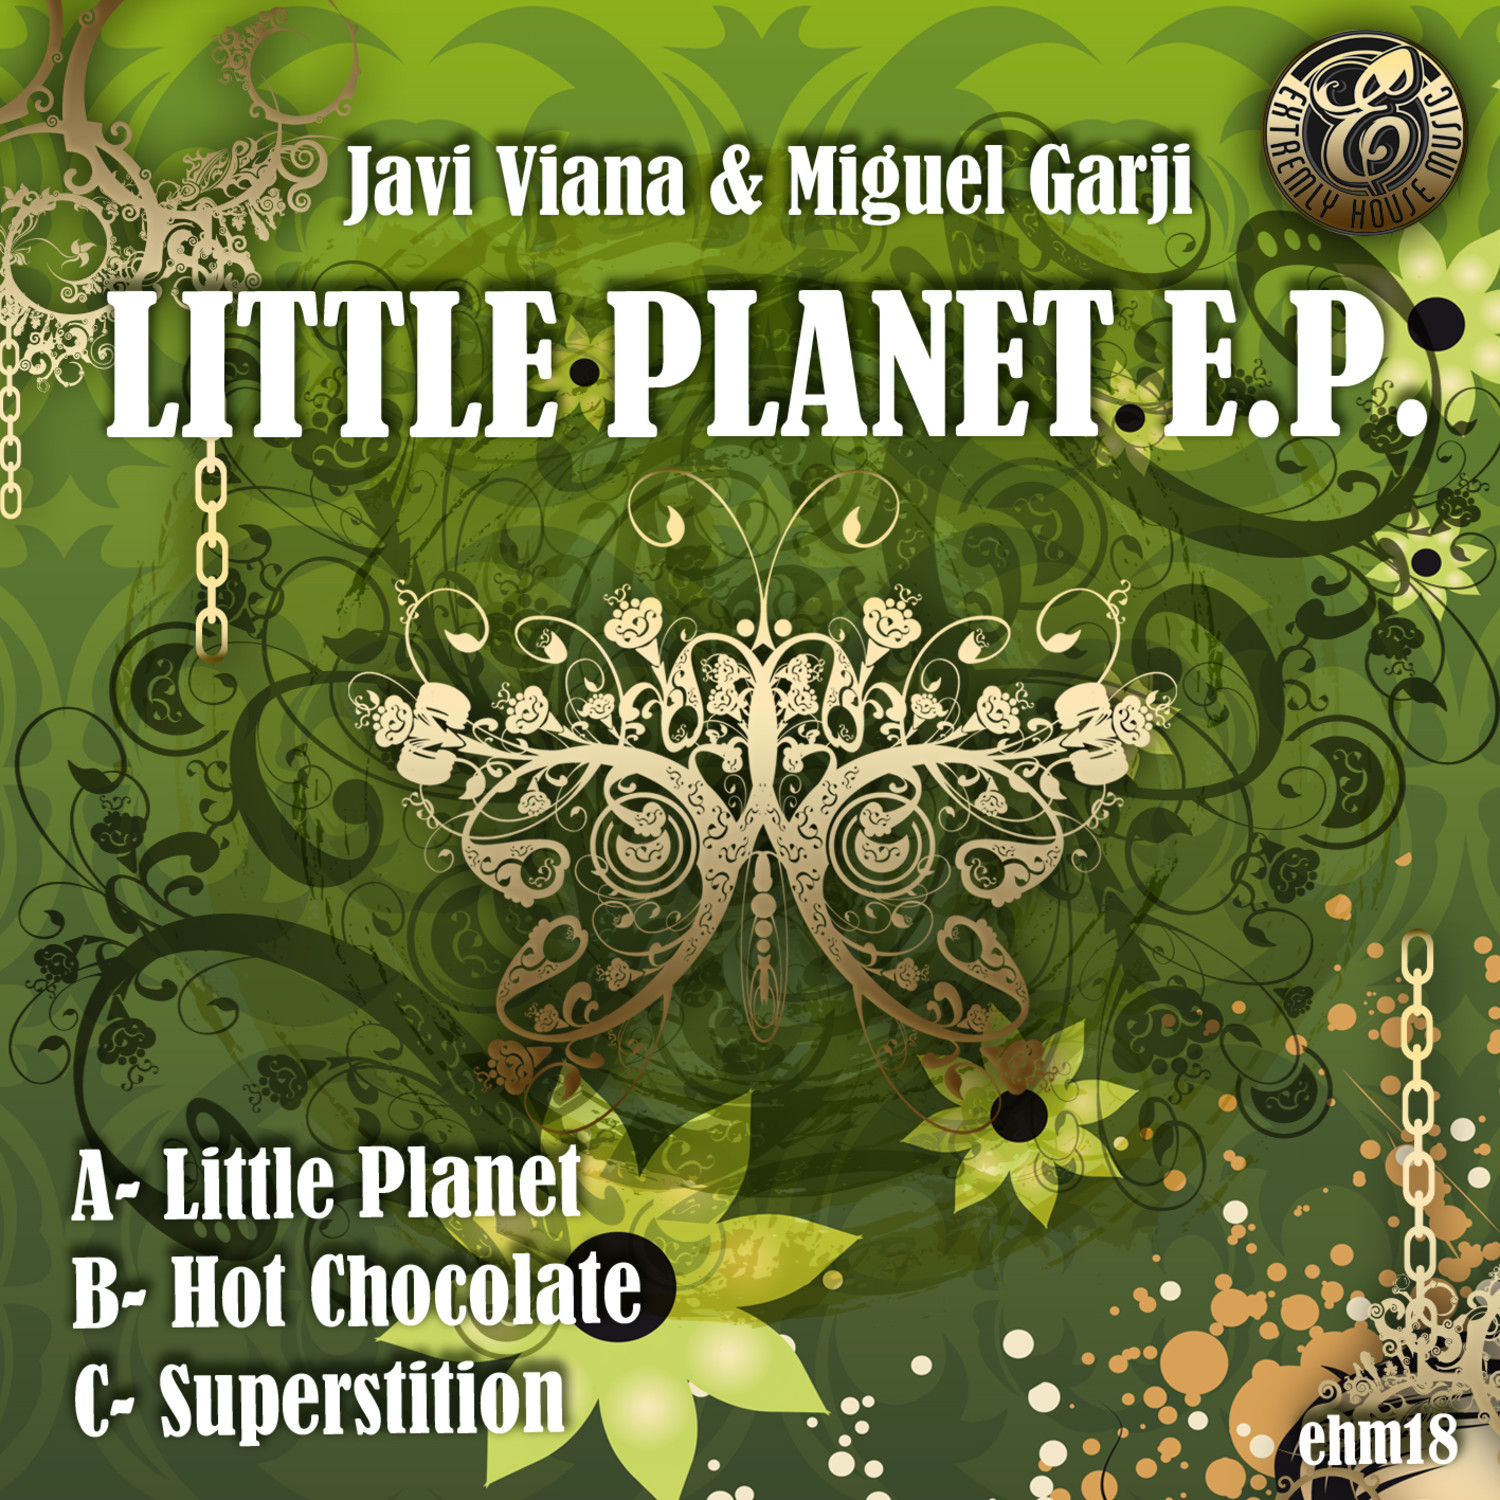 Little Planet E.P.